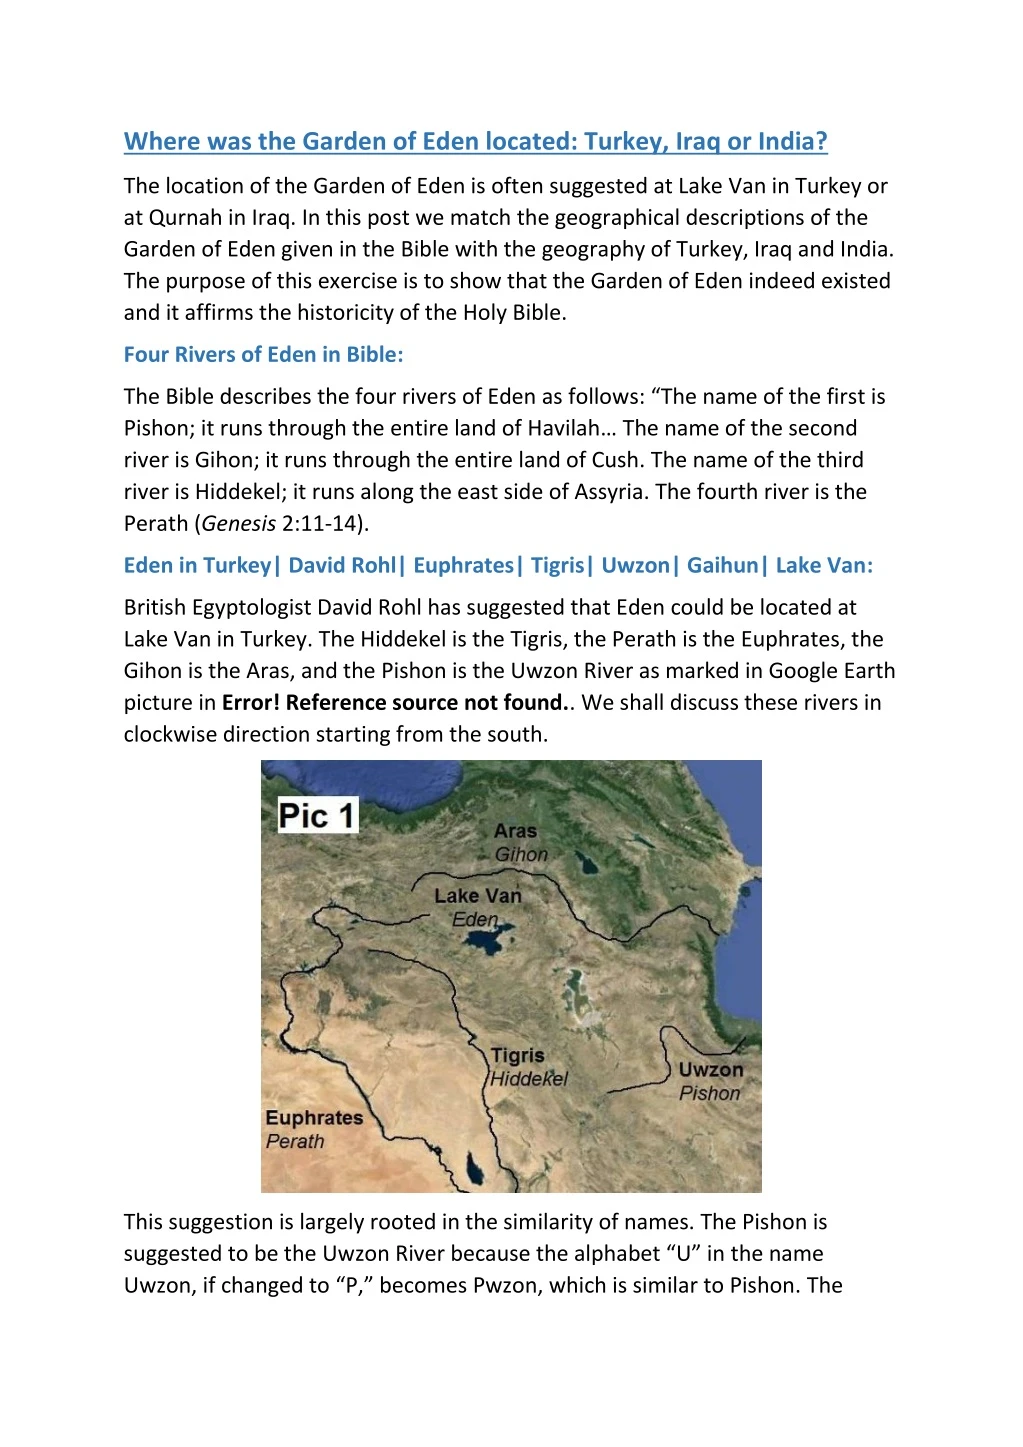 where was the garden of eden located turkey iraq